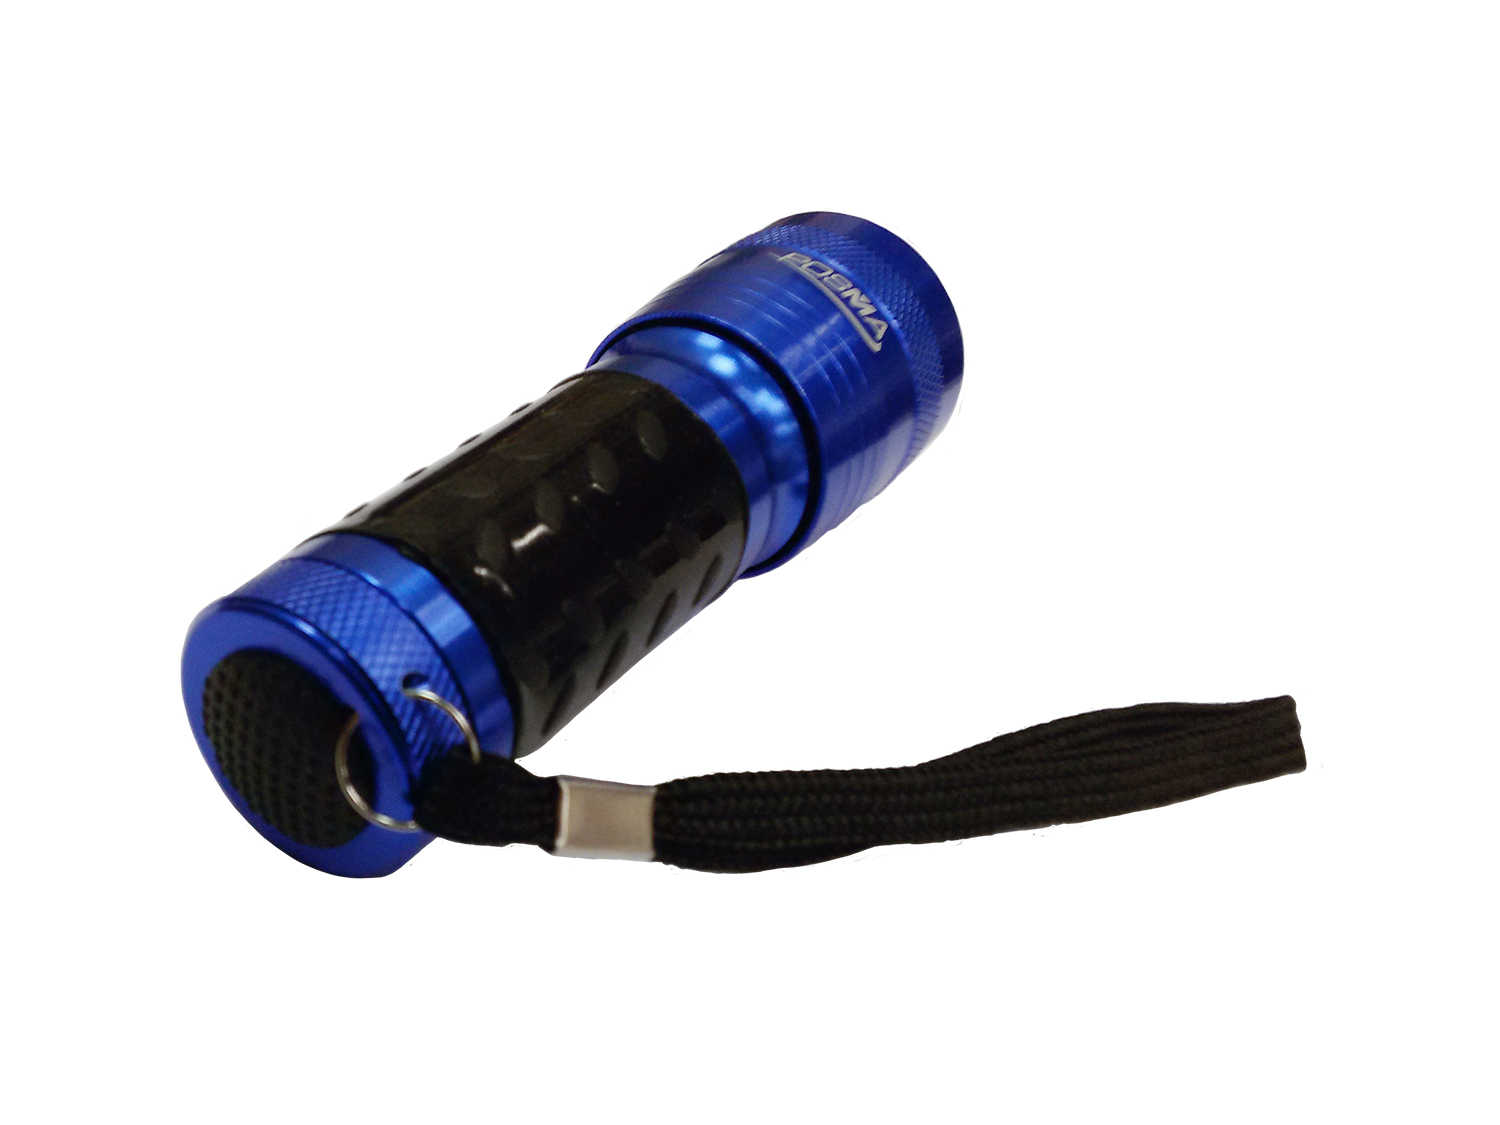 Posma GBT010 14 LED高爾夫球撿球手電筒/紫外線手電筒/紫外線燈泡+Posma禮品絨布袋